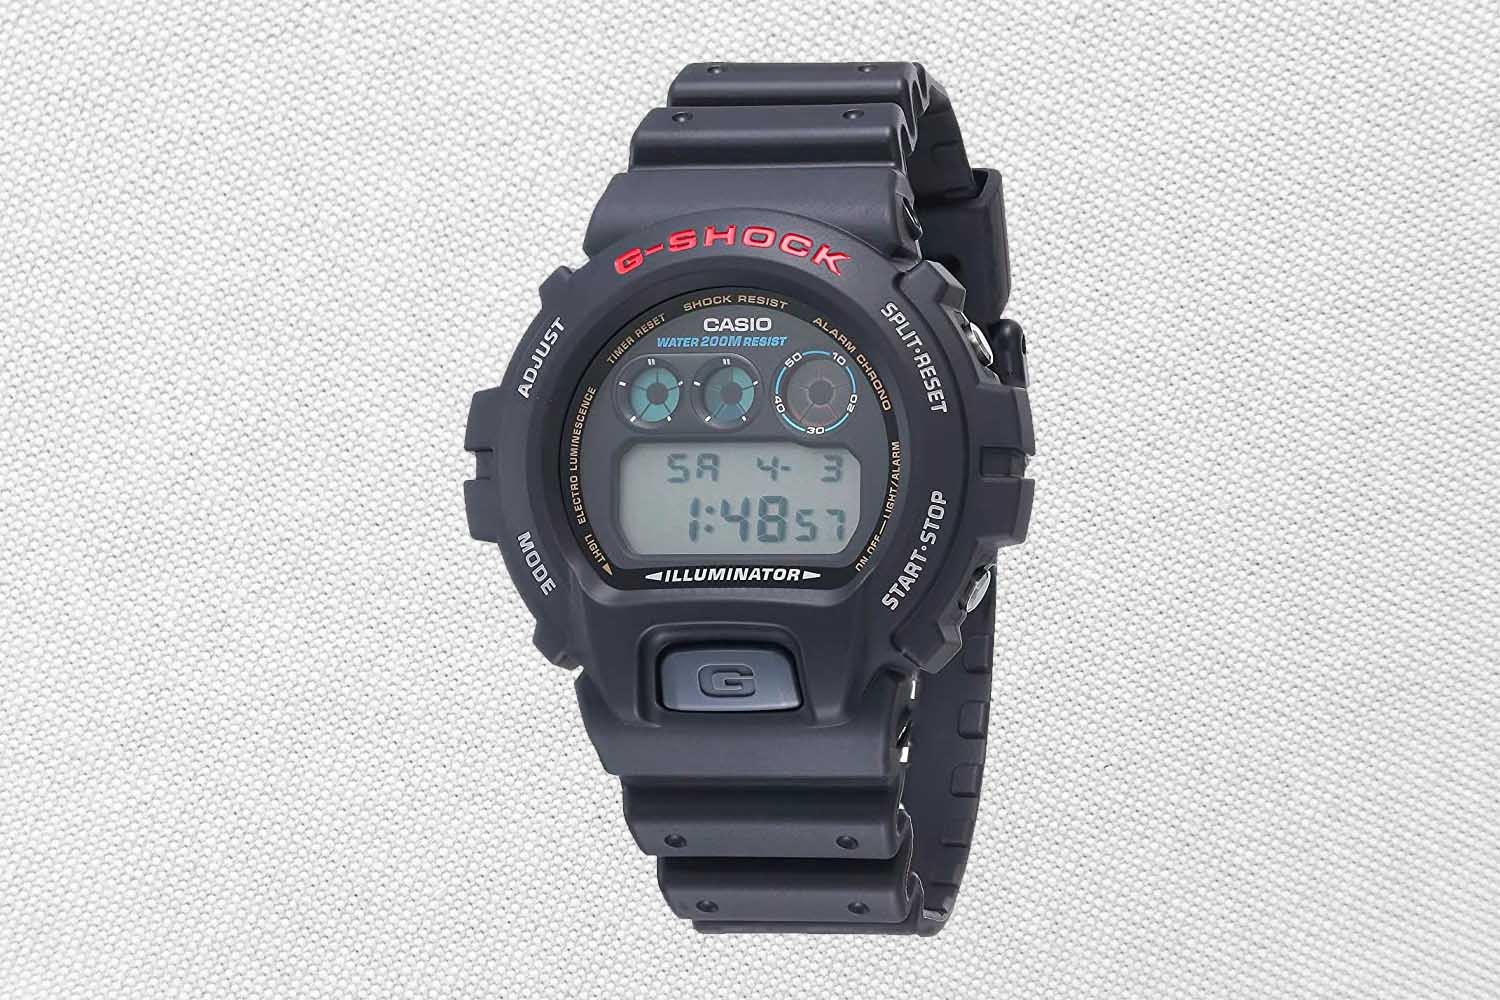 Casio G-SHOCK DW6900, one of the best watches under $1,000